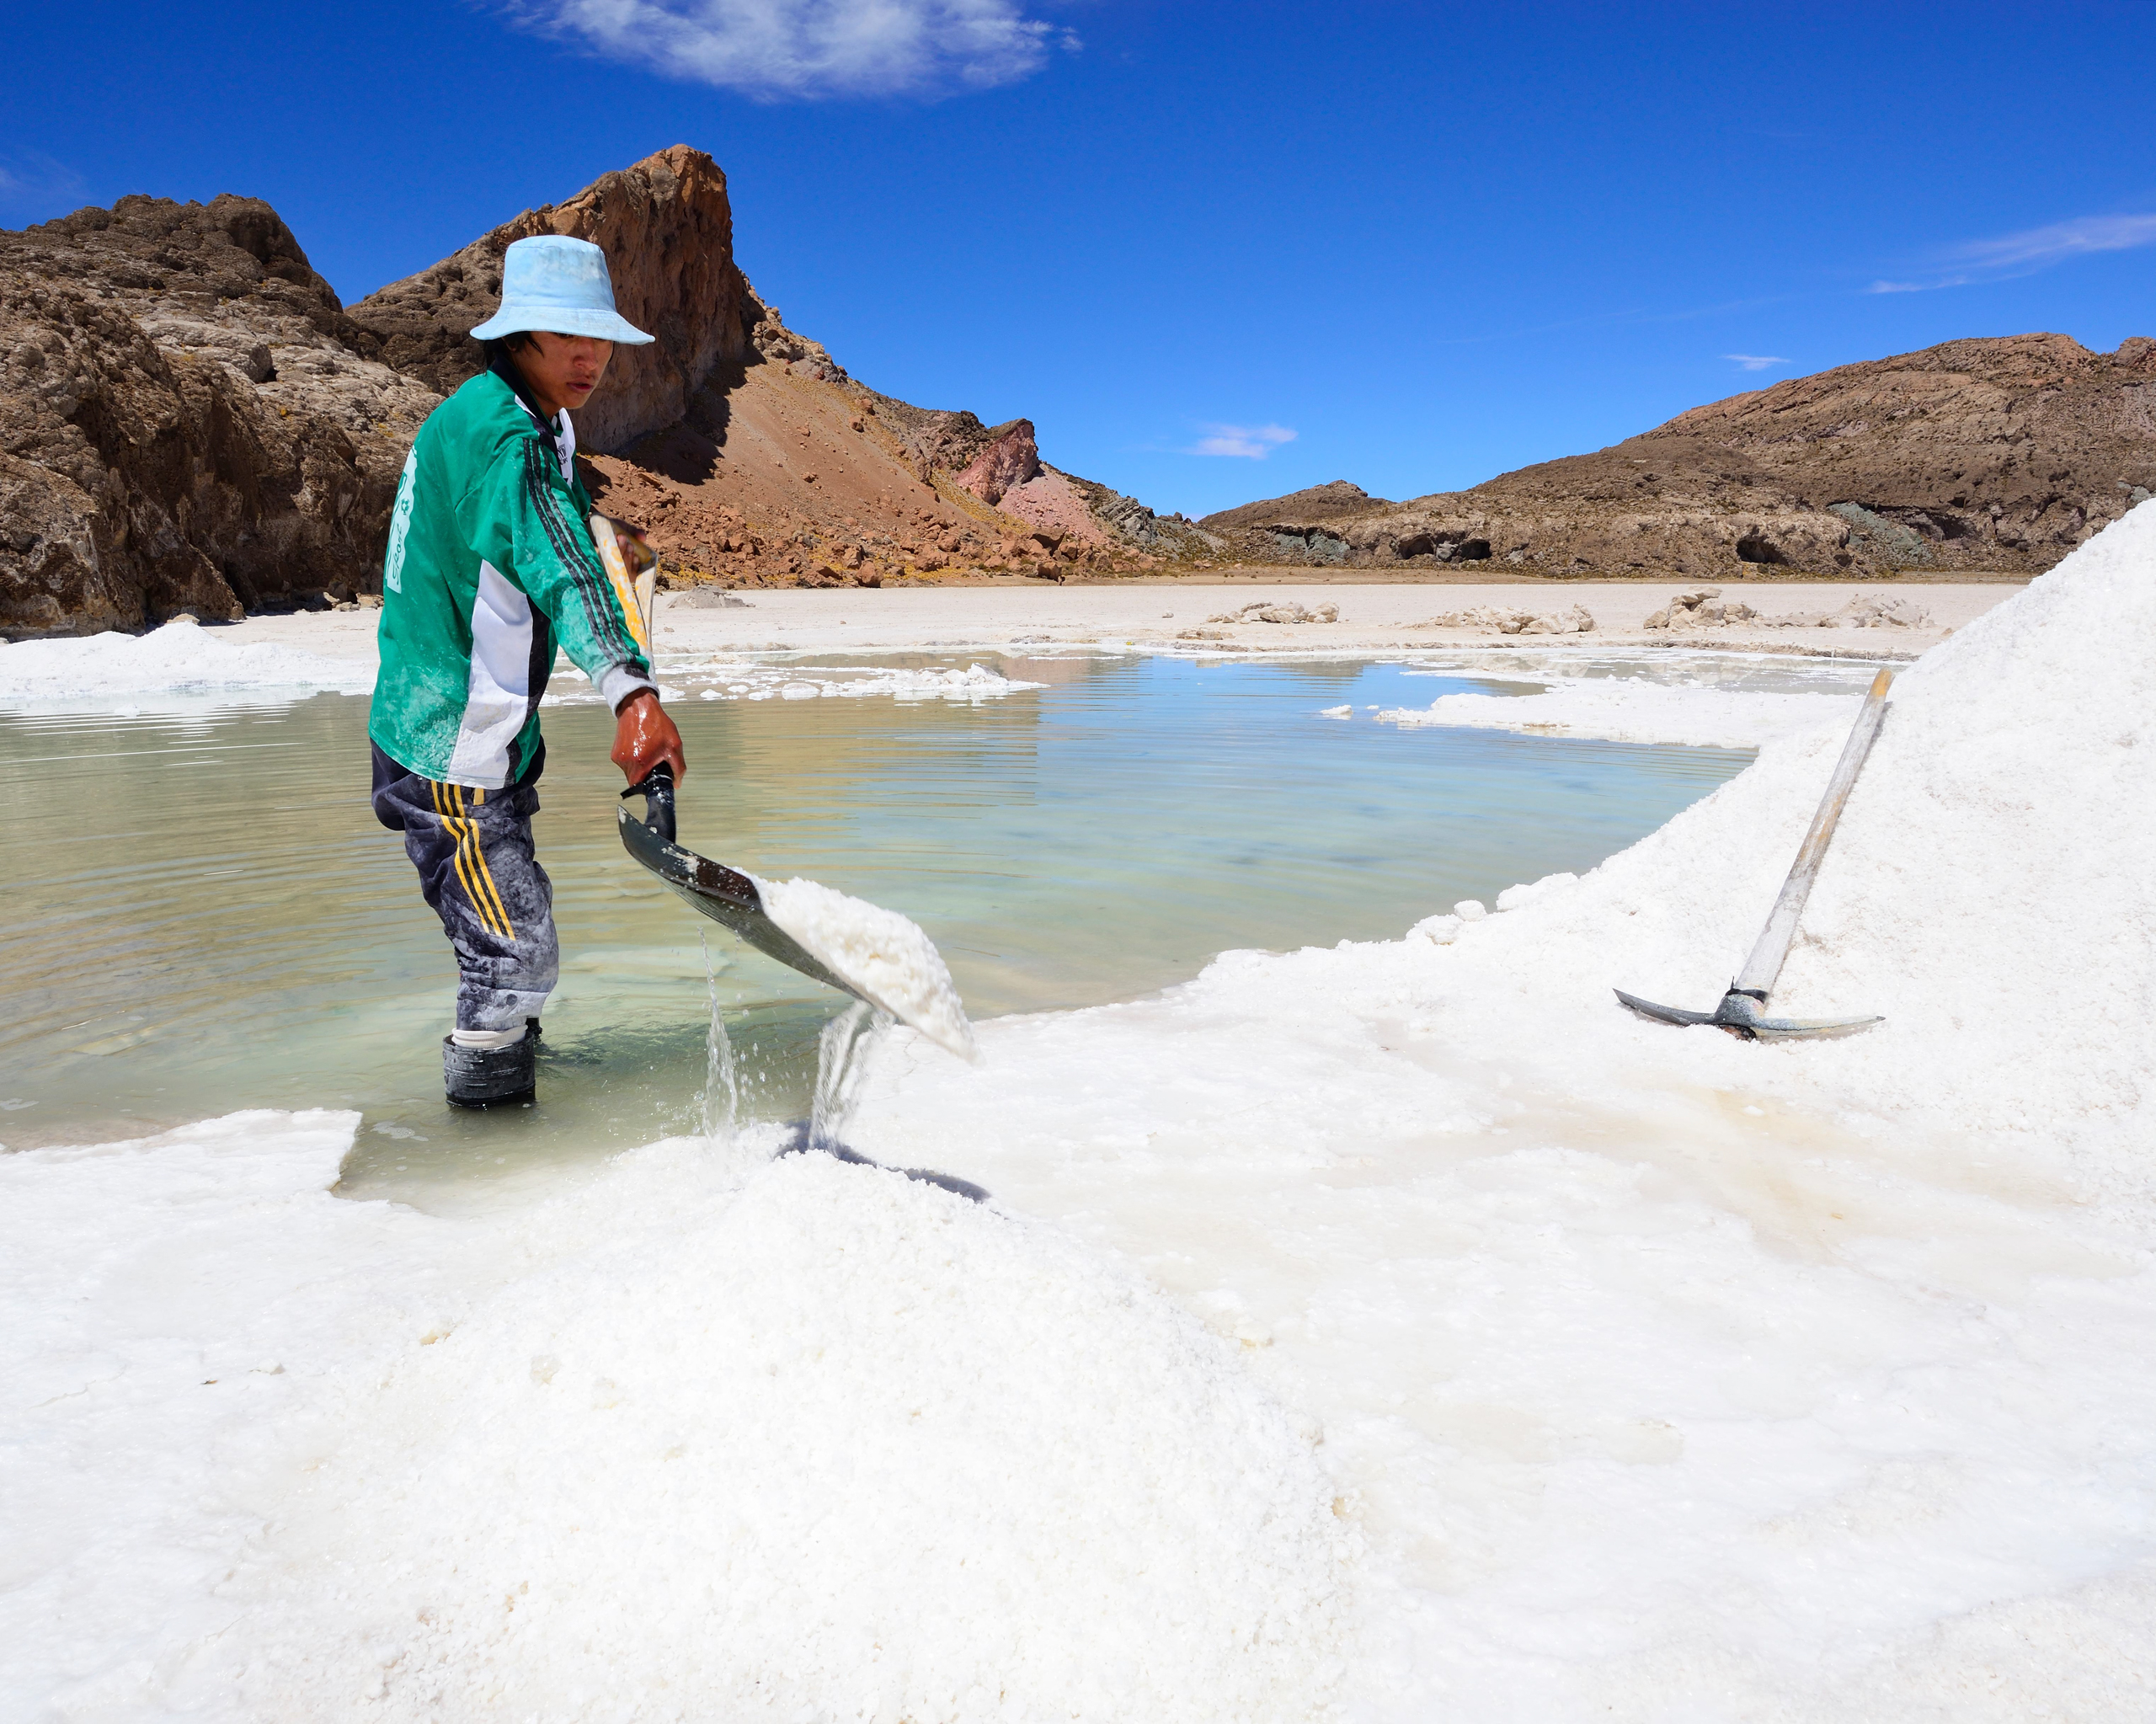 <p>Trabalhador no Salar de Uyuni, maior deserto de sal do mundo, Bolívia. Até 2040, 90% da demanda de lítio será destinada à transição energética global (Imagem: Peter Giovannini / ImageBROKER.com / Alamy)</p>